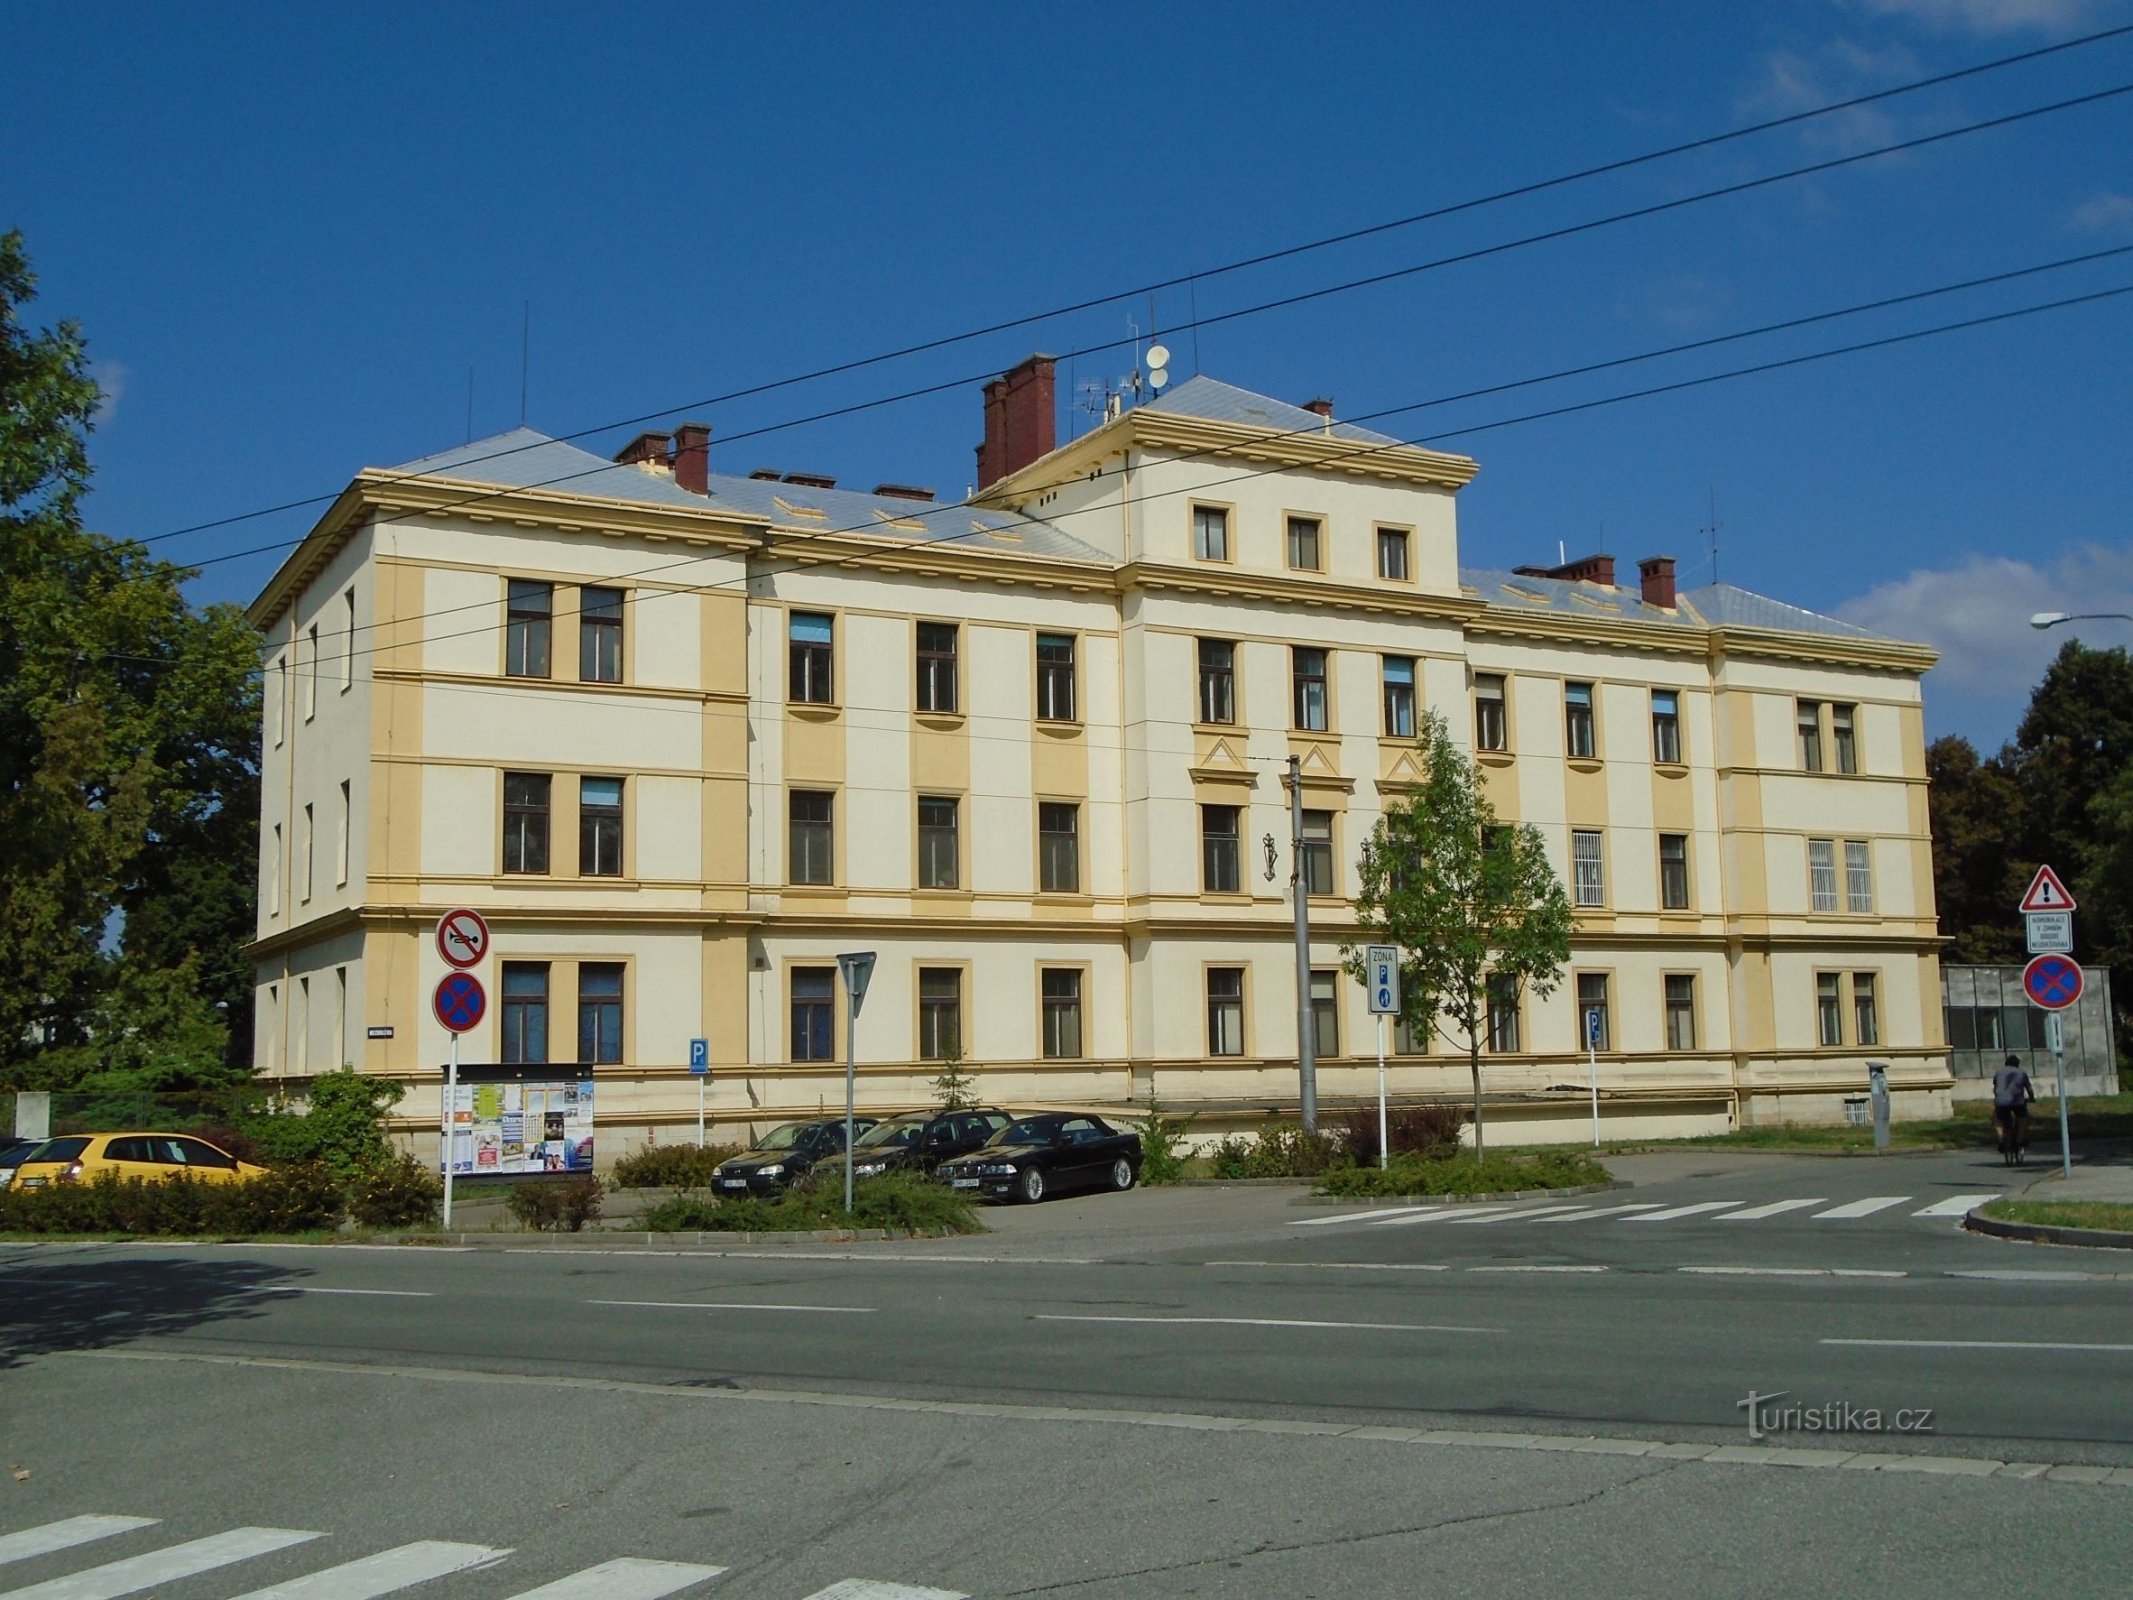 Bệnh viện cũ (Hradec Králové, ngày 2.9.2018 tháng XNUMX năm XNUMX)